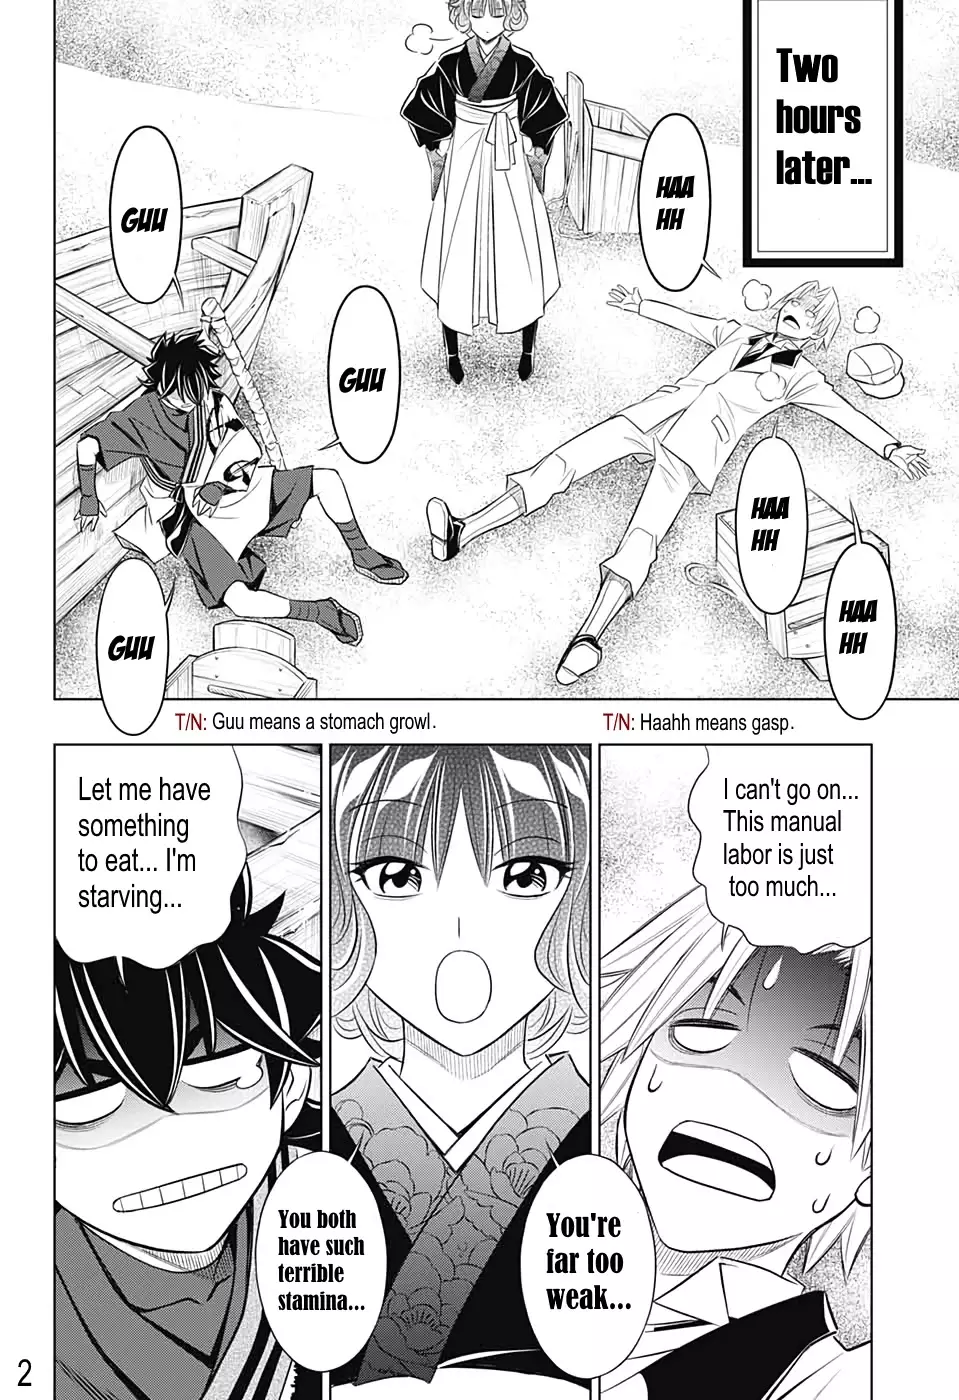 Rurouni Kenshin: Hokkaido Arc - 24 page 2